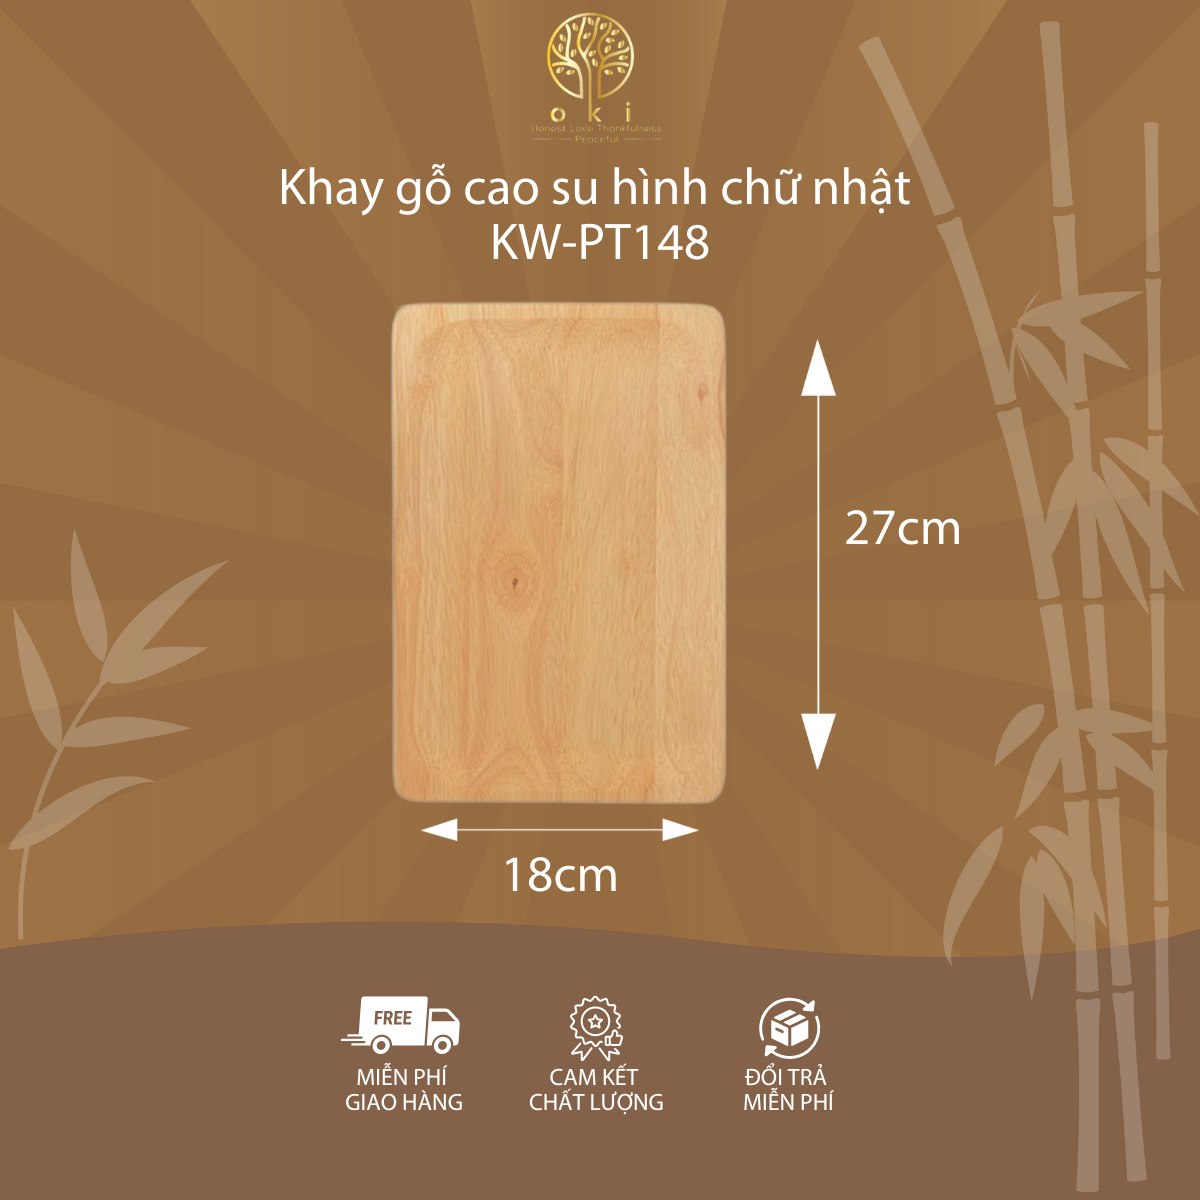 Khay gỗ cao su hình chữ nhật - KW-PT148 - Kích thước đa dạng, bền đẹp theo thời gian